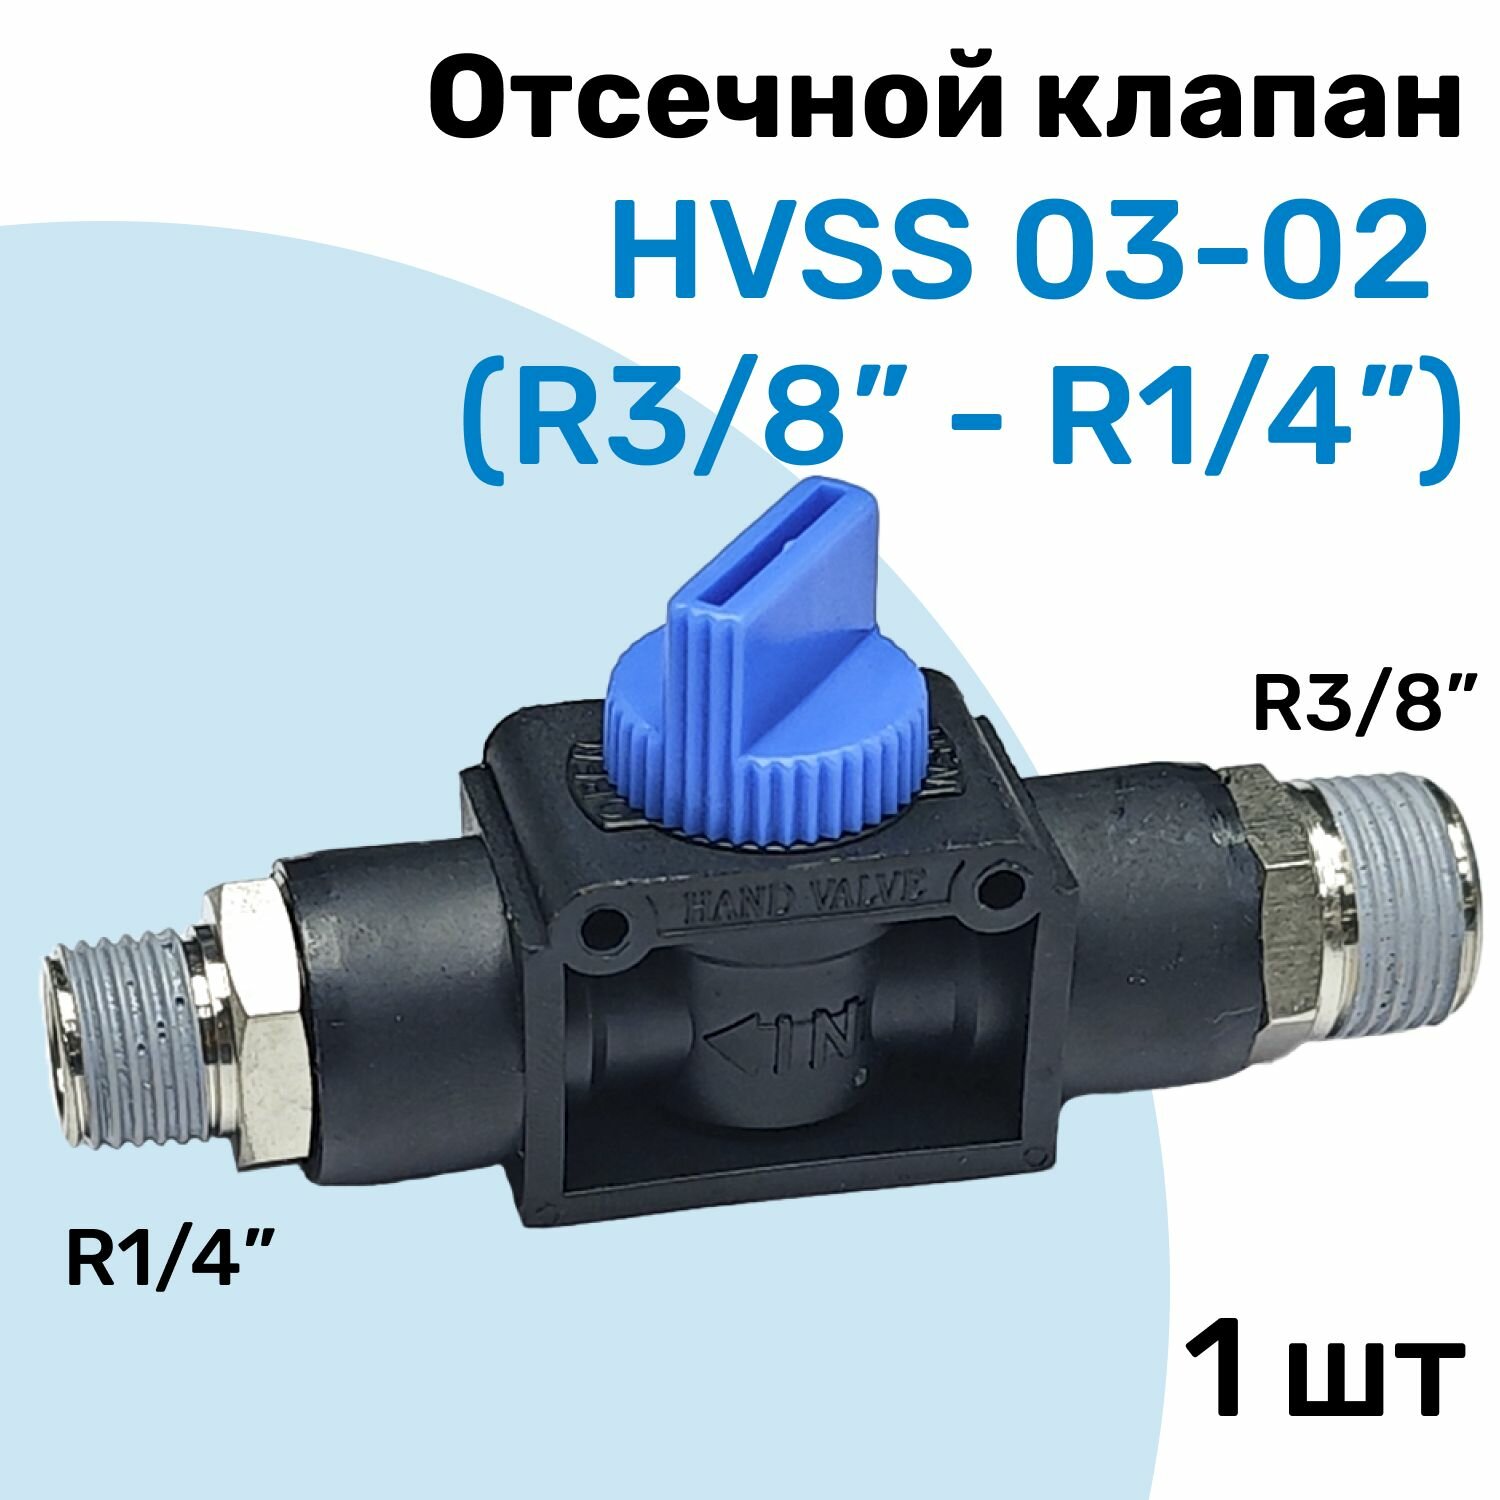 Отсечной клапан HVSS 03-02, R3/8"-R1/4", Клапан сброса давления, Пневмофитинг NBPT